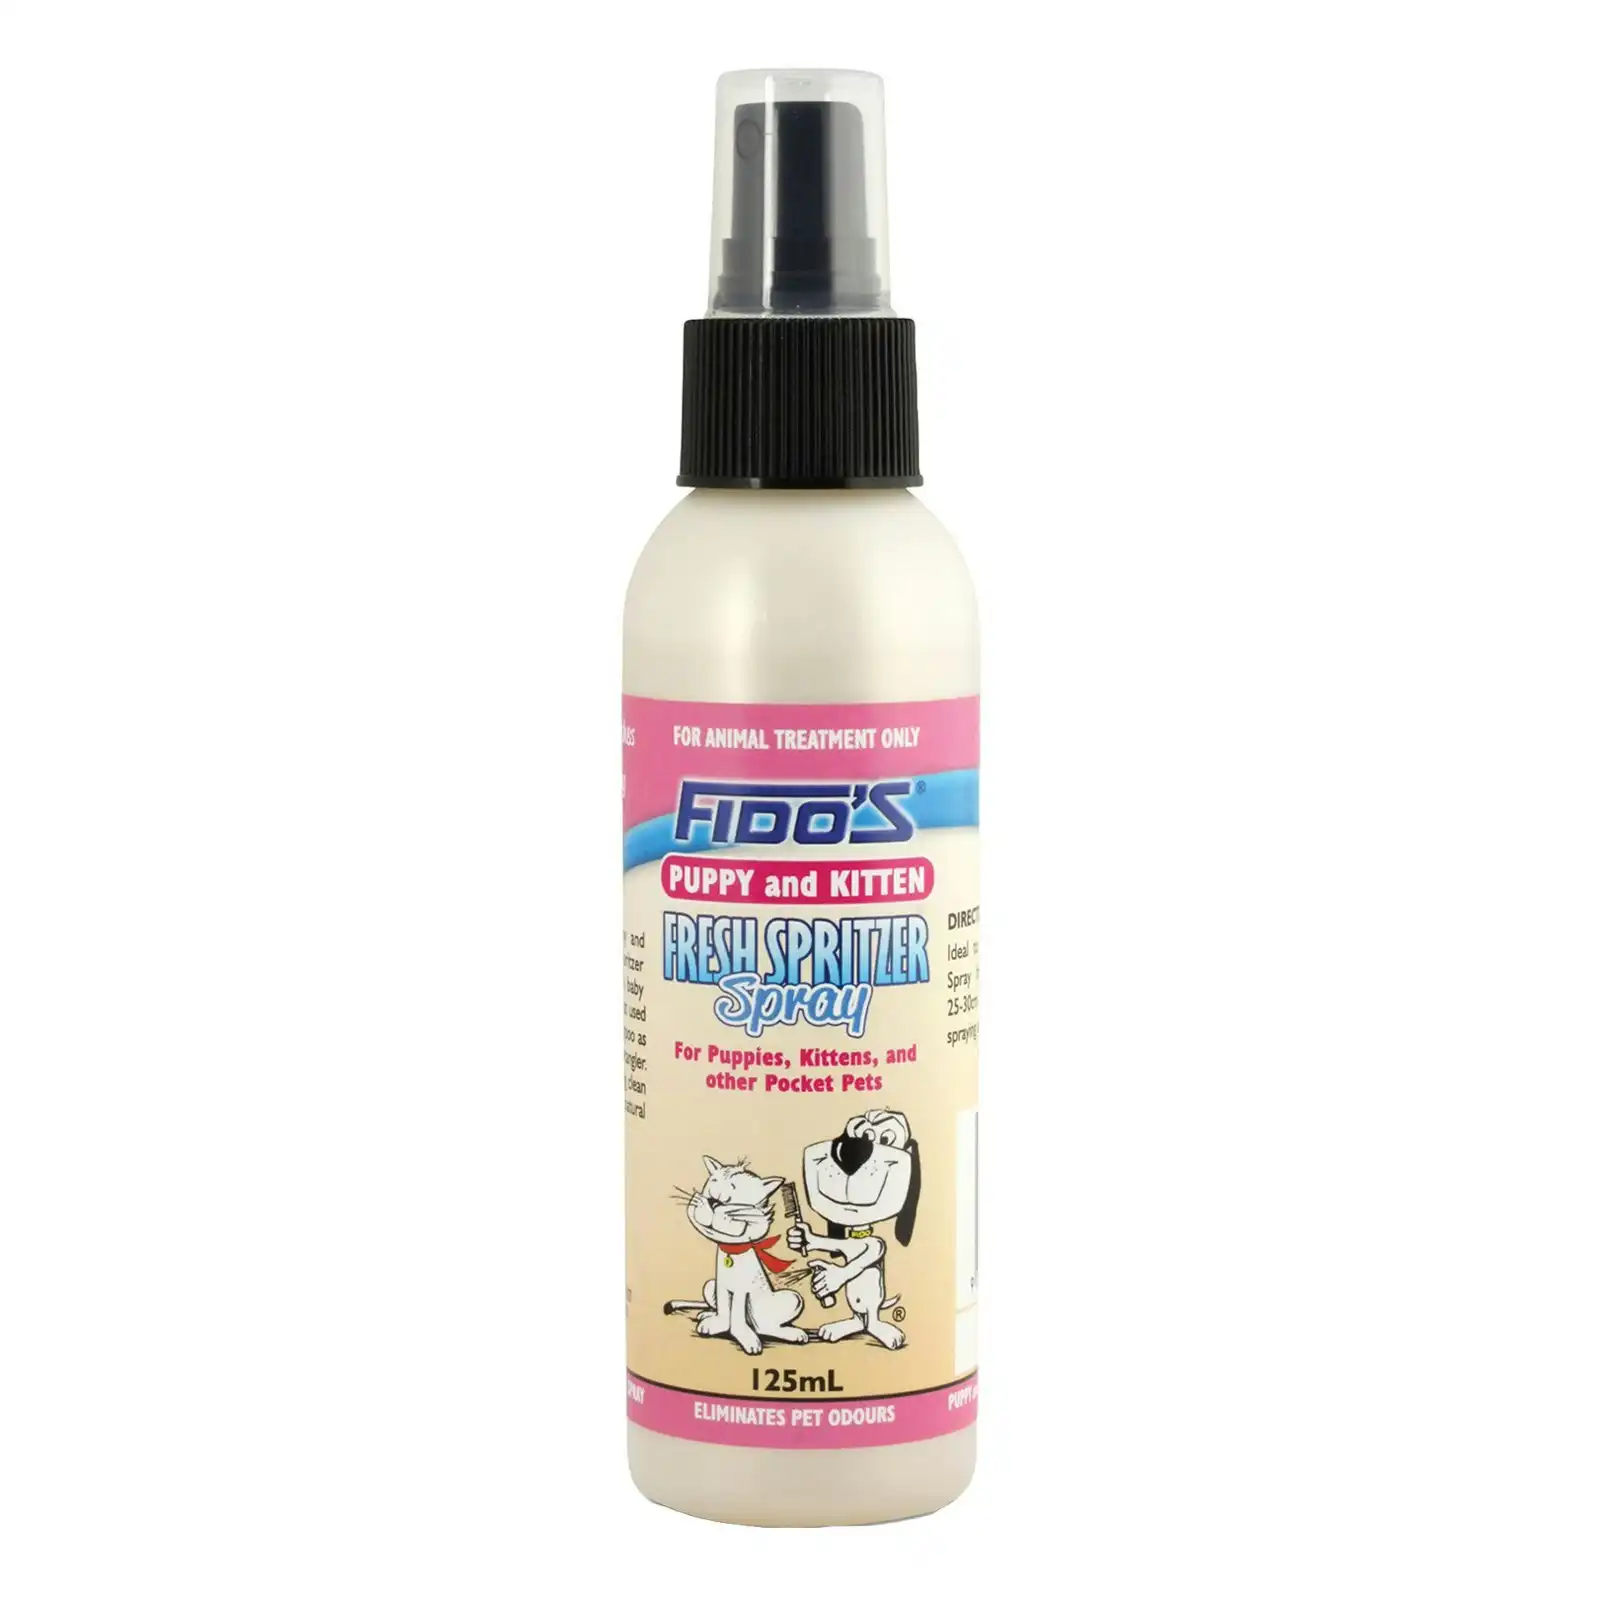 Fido's Puppy and Kitten Spritzer Spray 125 mL